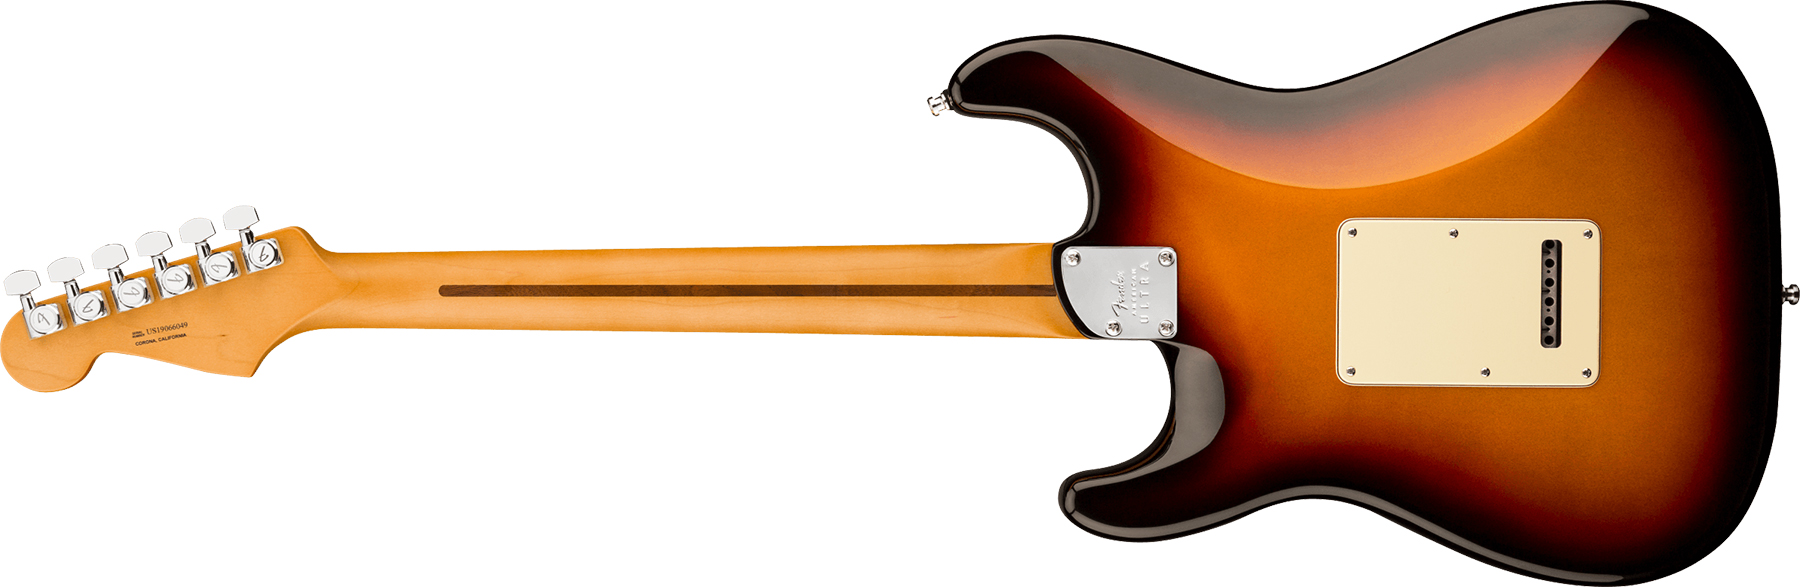 Fender Strat American Ultra Hss 2019 Usa Rw - Ultraburst - E-Gitarre in Str-Form - Variation 1